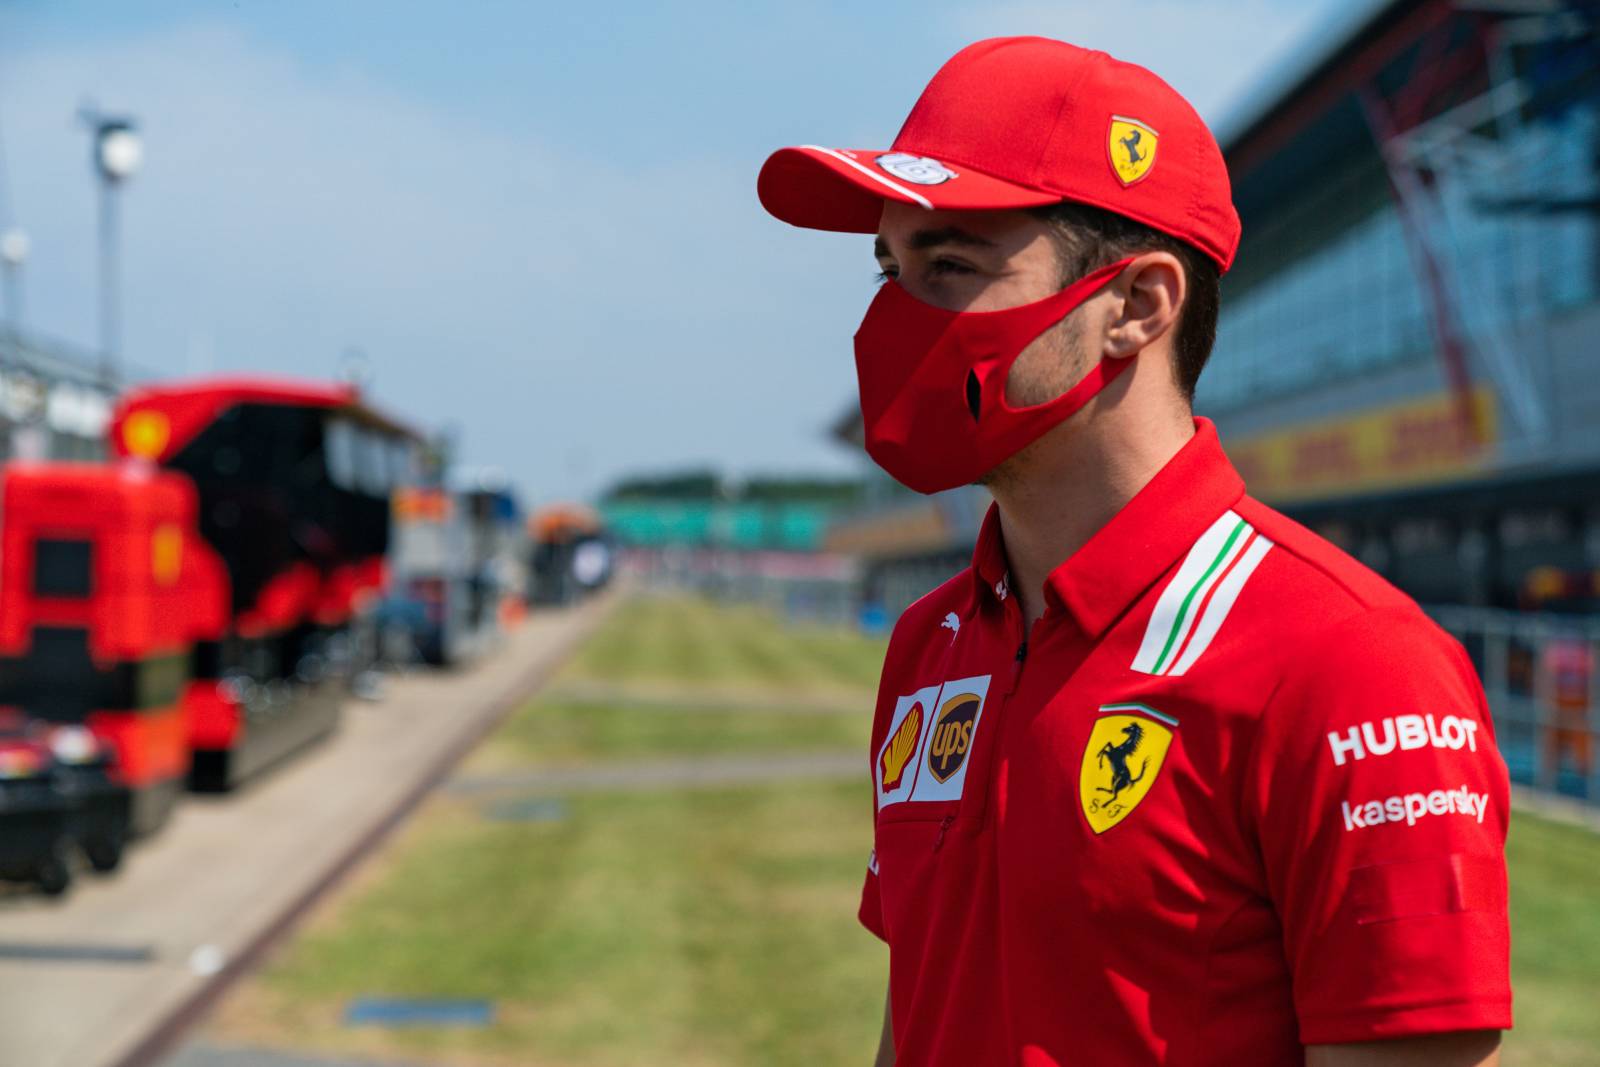 3) Charles Leclerc renovou contrato com a Ferrari e subiu na lista de salários, agora recebendo £ 10,19 milhões por ano (R$ 76,3 milhões)